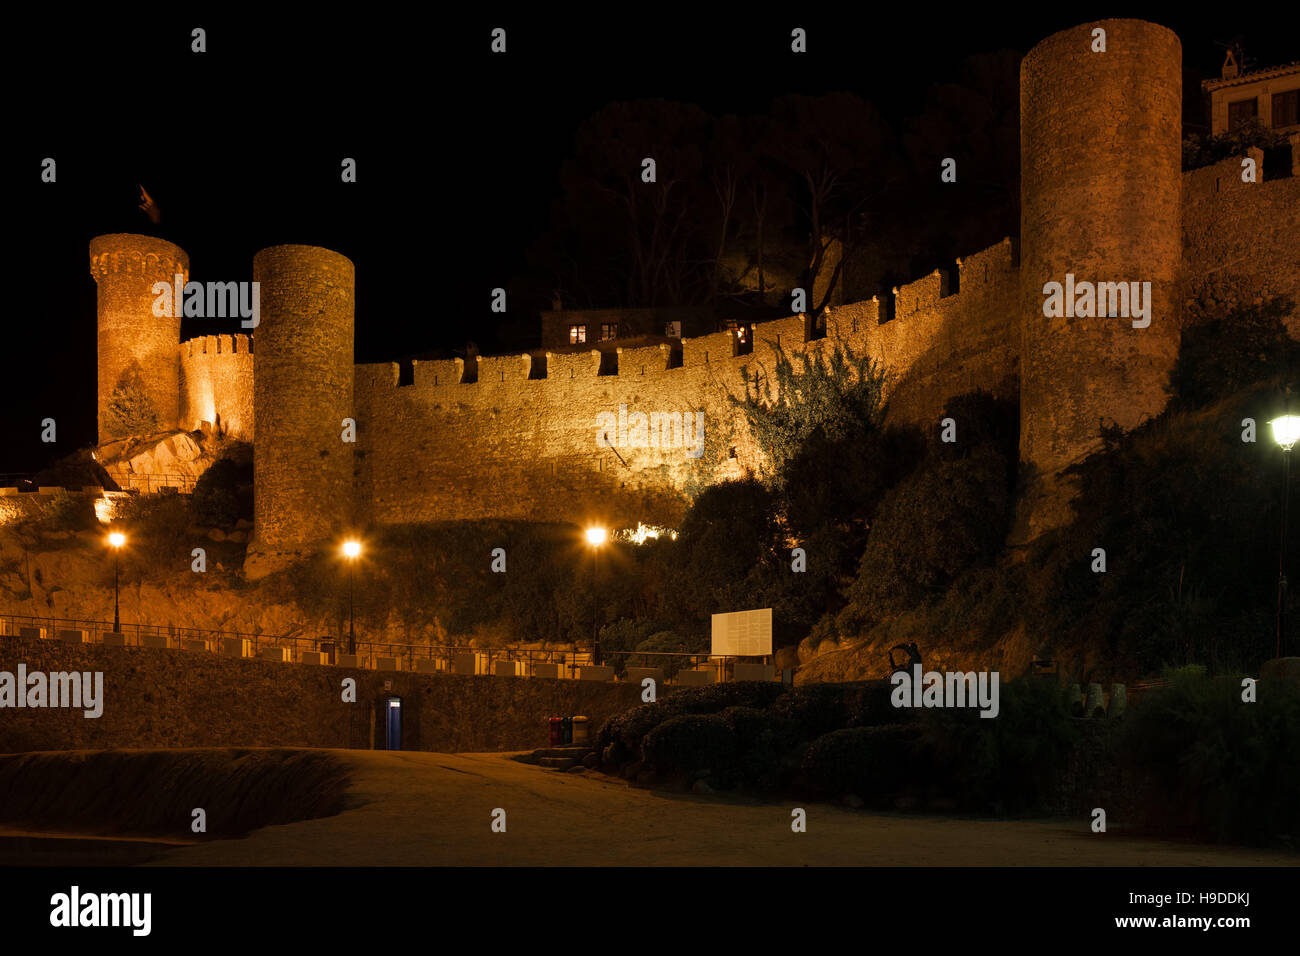 Spanien, Costa Brava, Tossa de Mar in der Nacht, Schloss - Stein Wand der ummauerten Altstadt, 14. Jahrhundert Festung Stockfoto